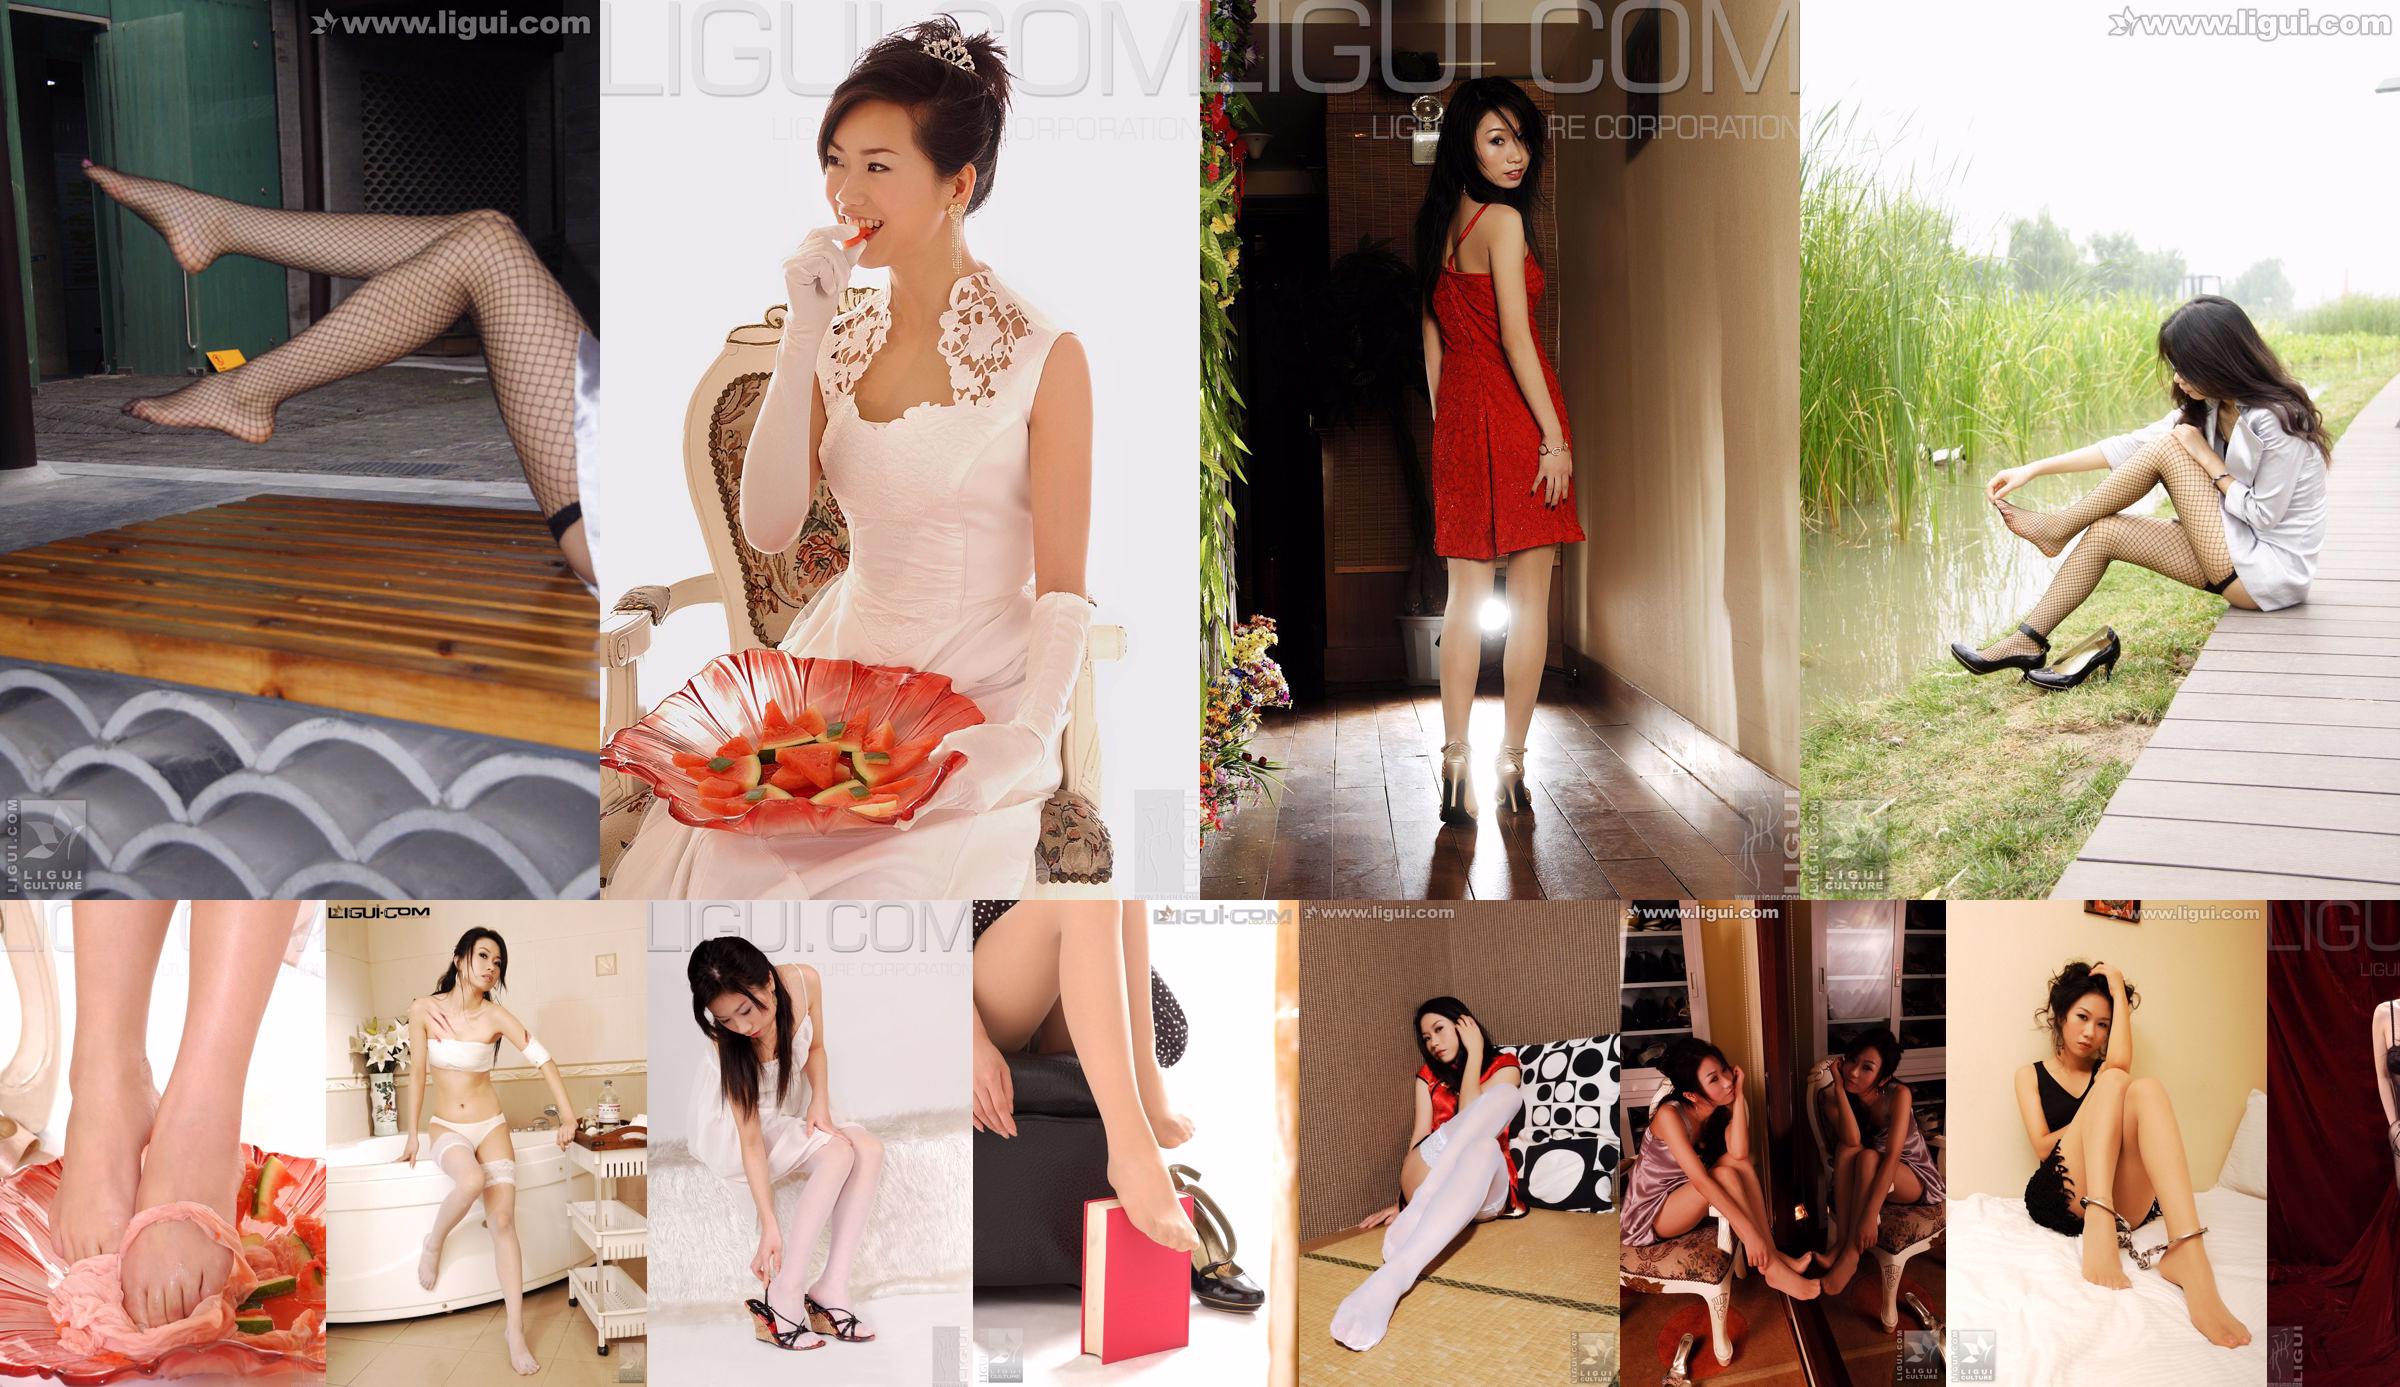 [丽 柜 LiGui] Pijama da modelo Cheng Hailun + foto do pé de seda branca No.255365 Página 6